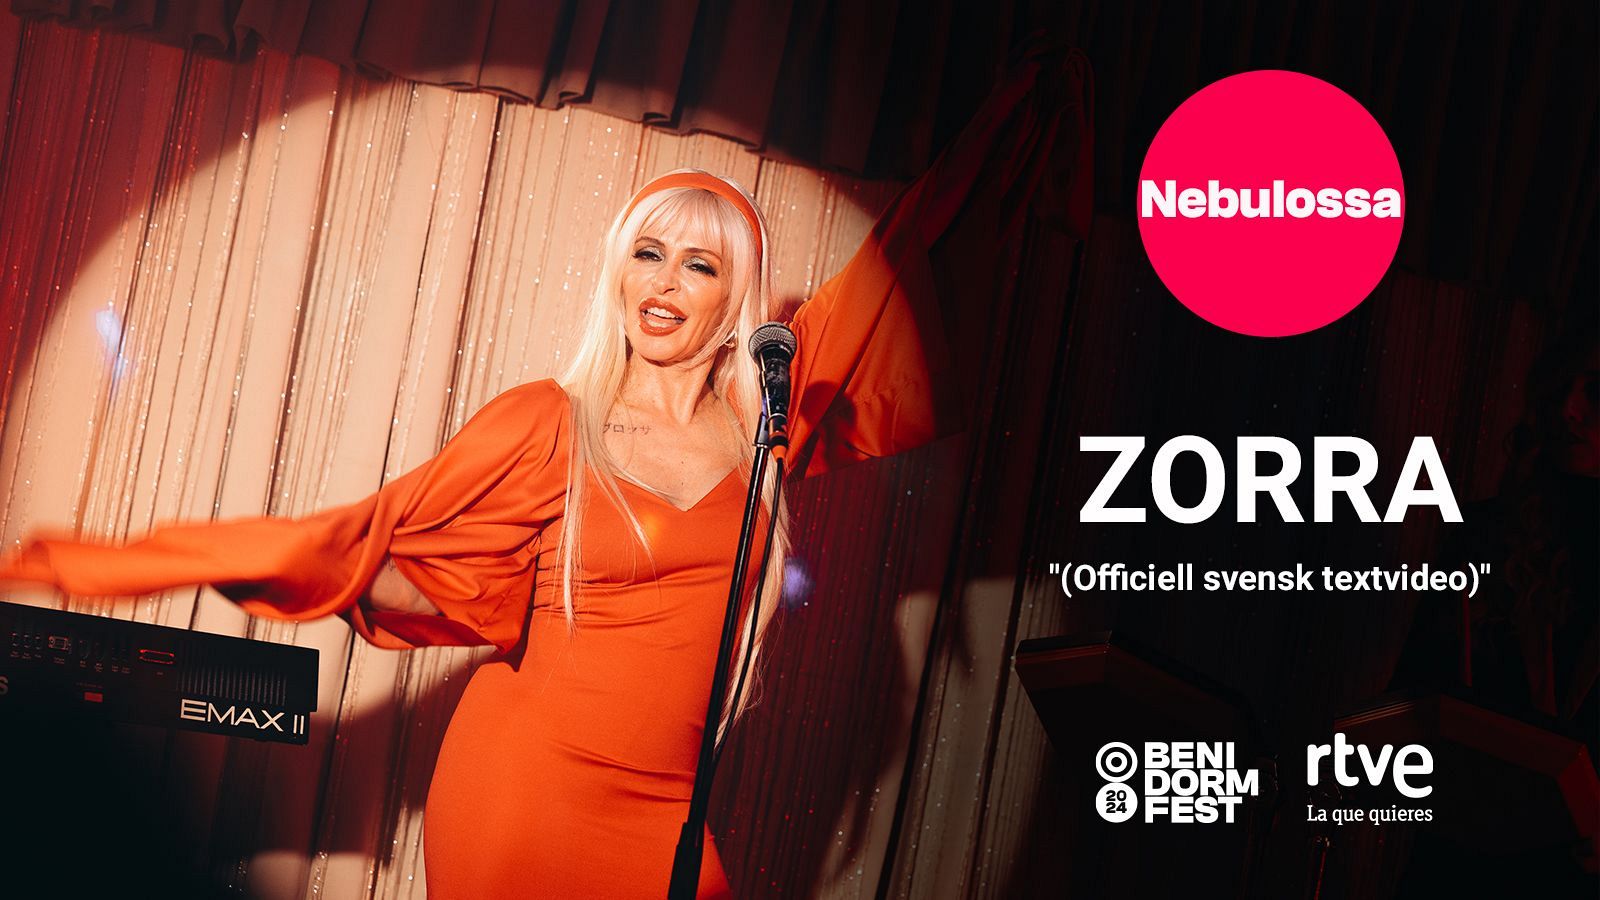 Eurovisión 2024 | Zorra" de Nebulossa, videoclip oficial (Traducción al inglés)